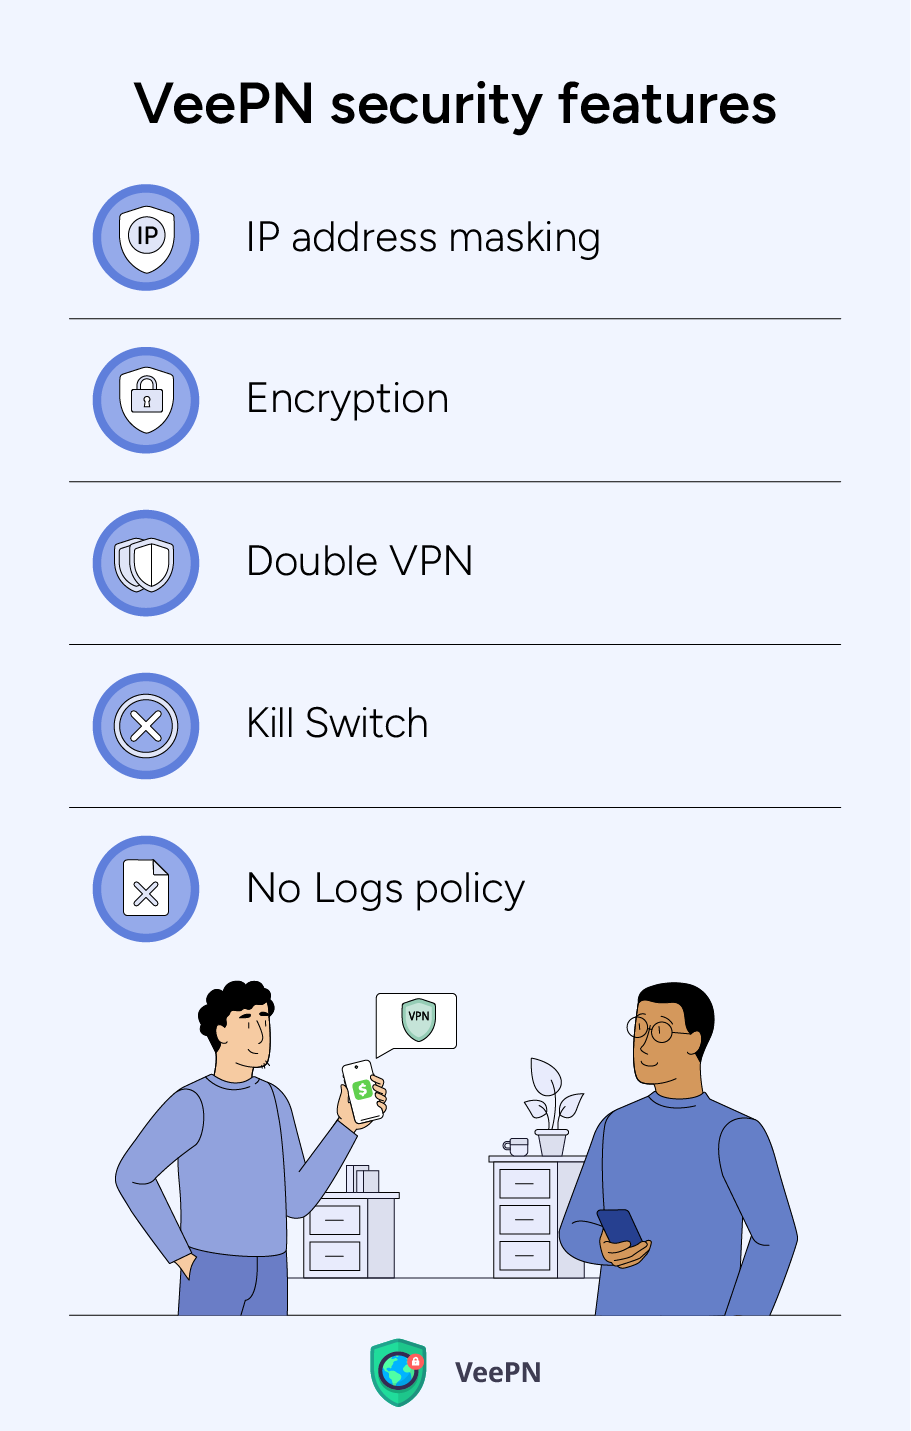 VeePN security features